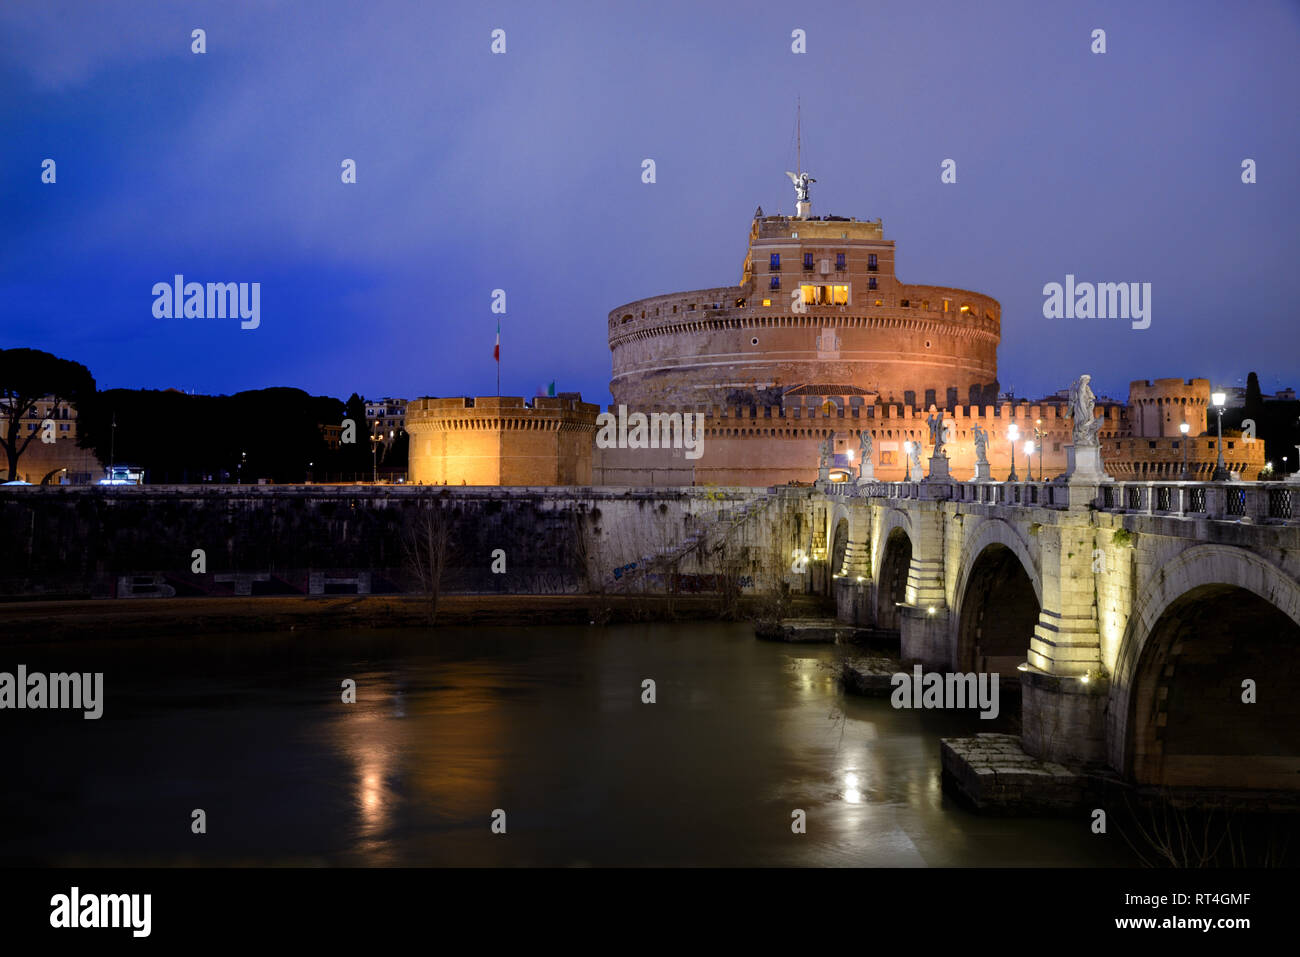 Dämmerung oder Nacht über Mausoleum des Hadrian, Castel Sant'Angelo, Festung, Burg oder Fortres und Ponte Sant'Angelo Brücke (134 AD) über den Tiber Rom Italien Stockfoto